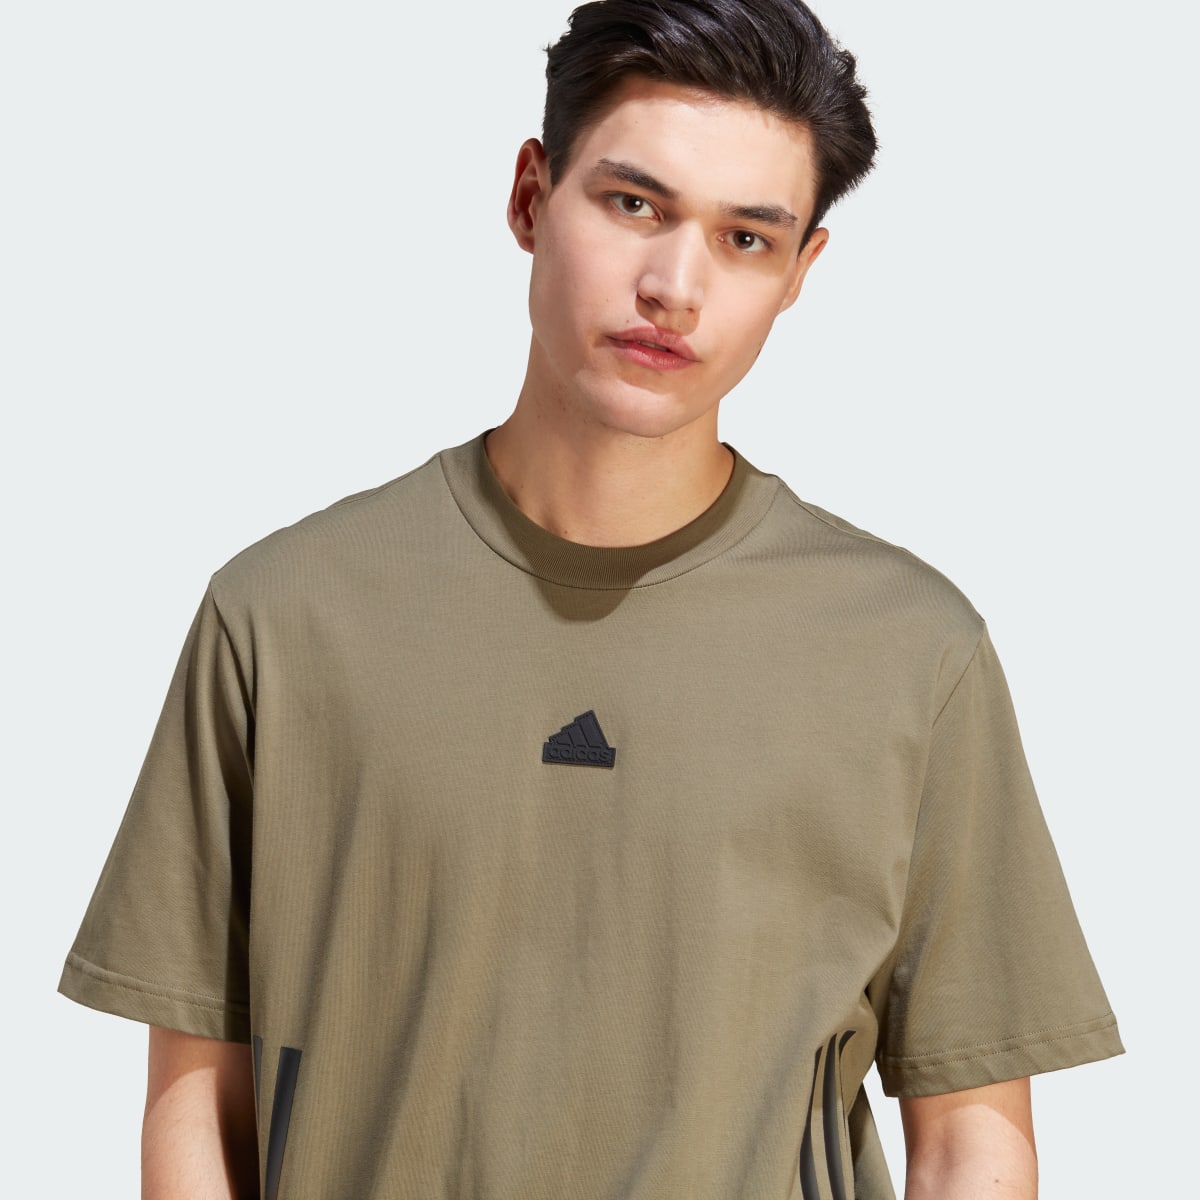 Adidas Future Icons 3-Stripes T-Shirt. 6